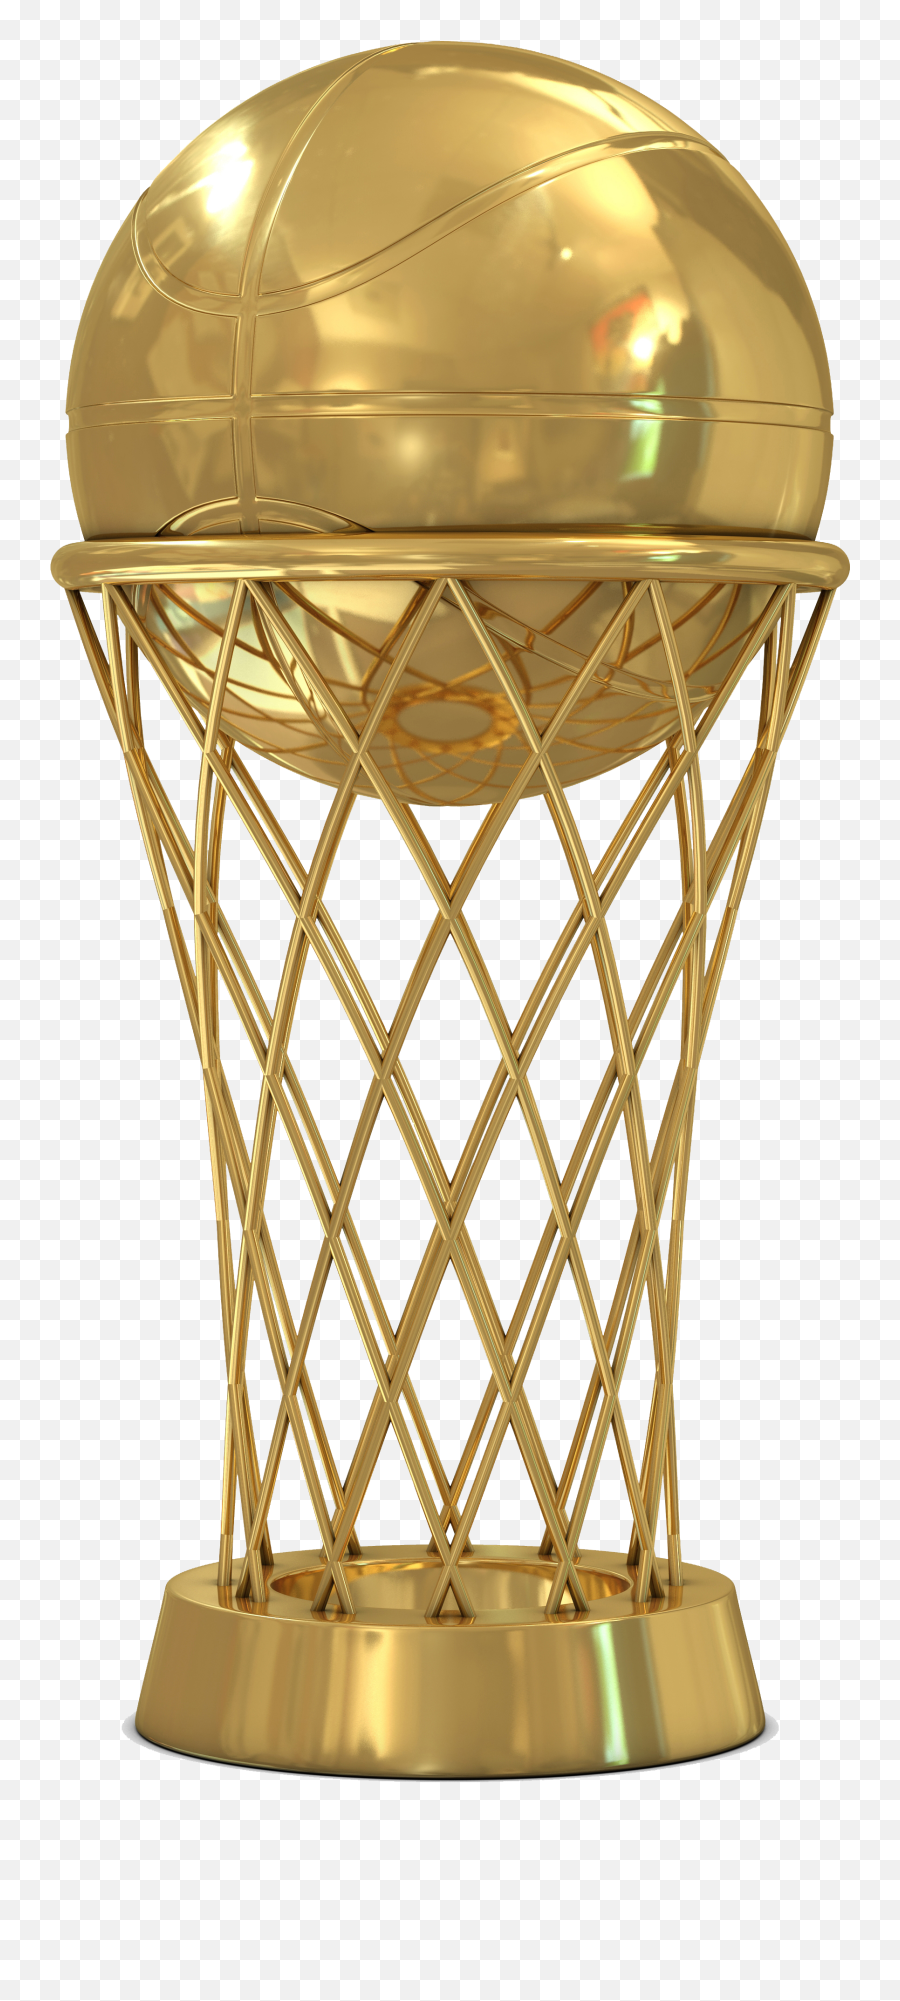 Download Trophy Golden Basketball Cup National Finals - Basketball Champion Trophy Png Emoji,Basketball Transparent Background